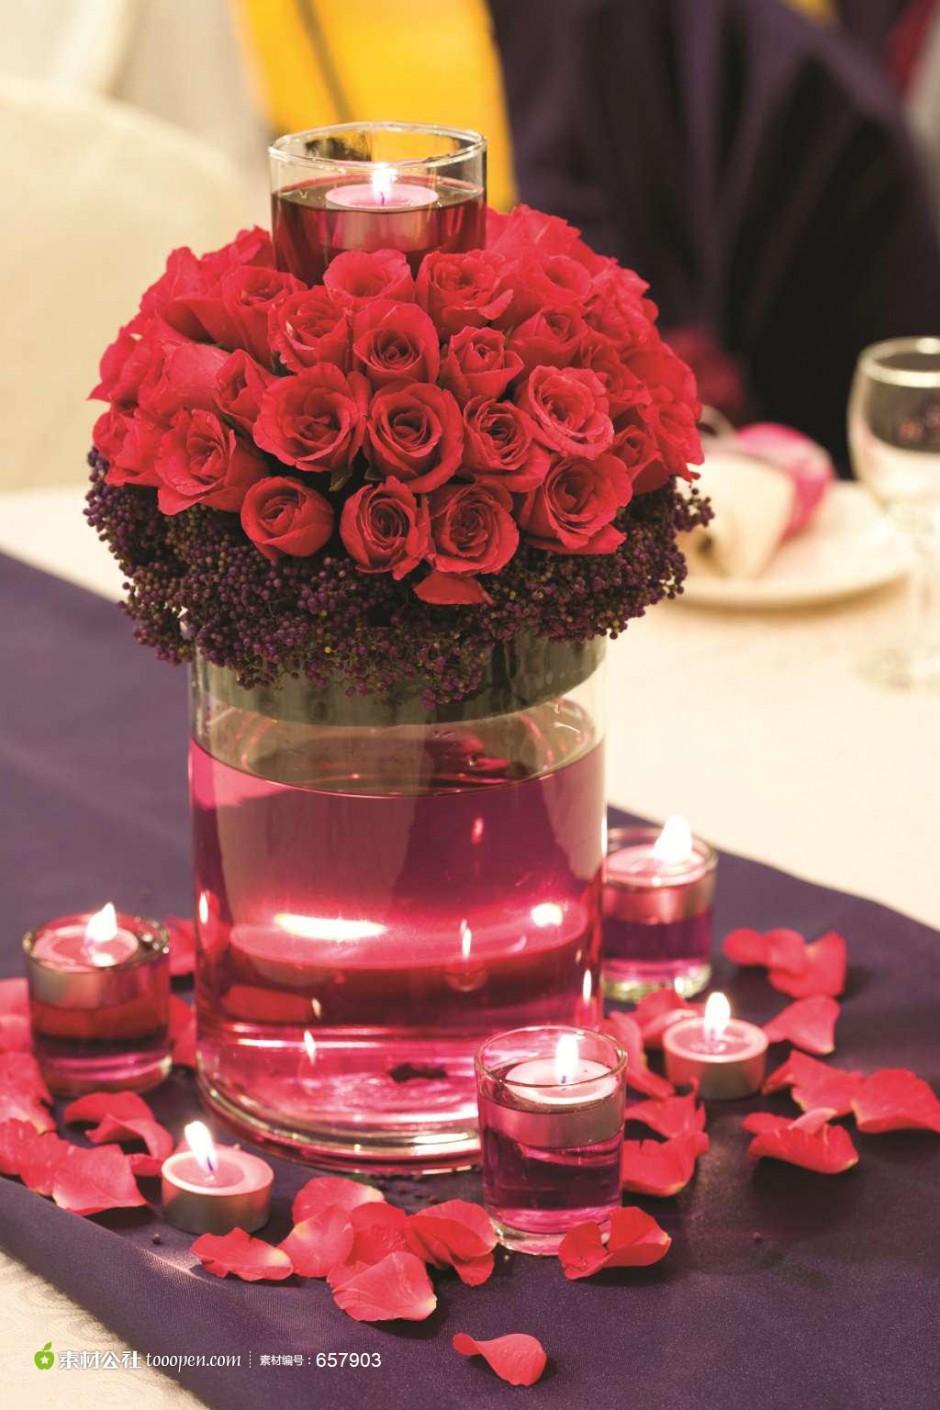 花瓶里的红玫瑰花束和蜡烛高清图片